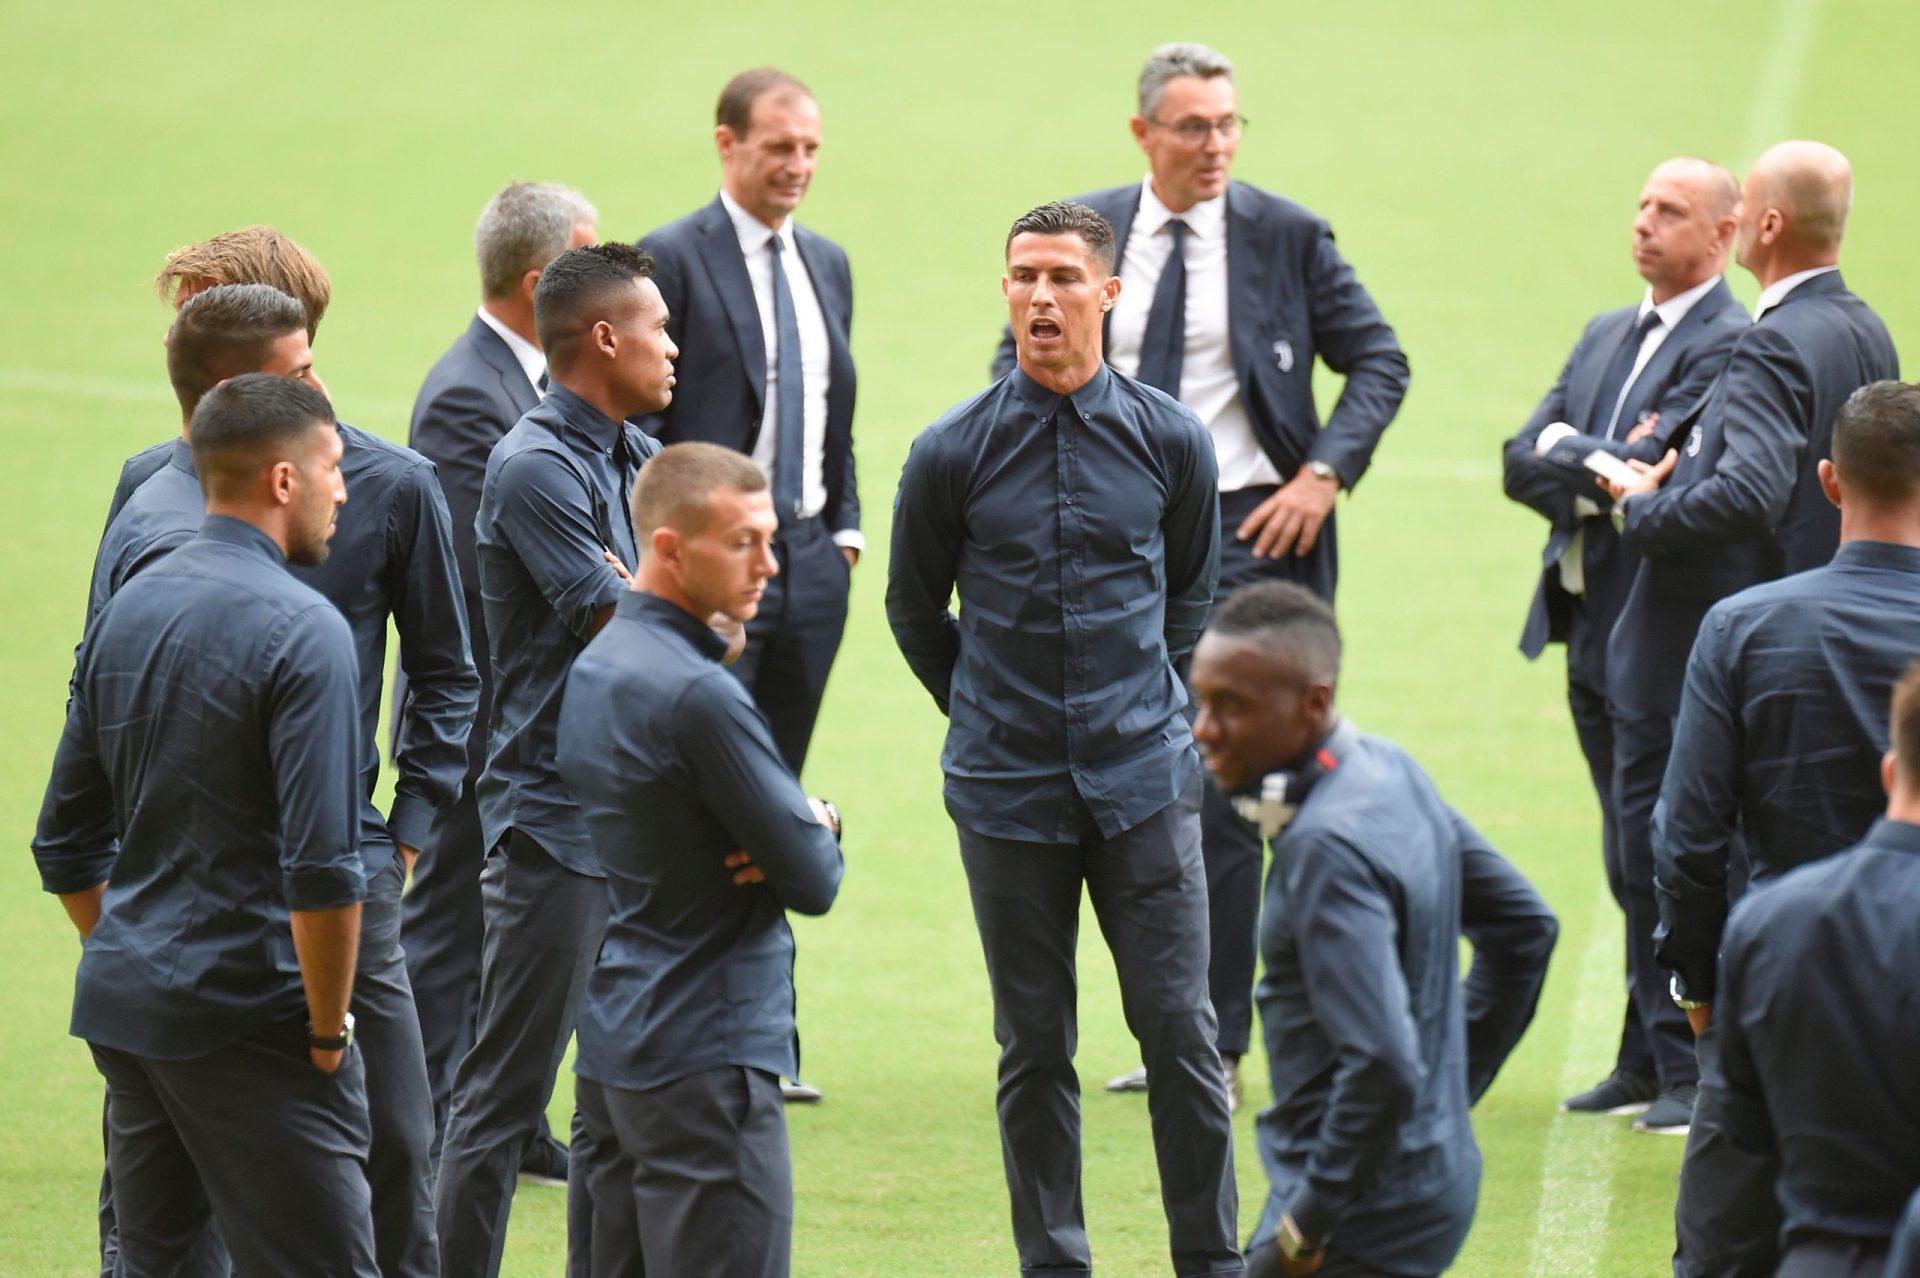 Grupo de encapuçados atacam hotel onde Ronaldo está hospedado com a Juventus